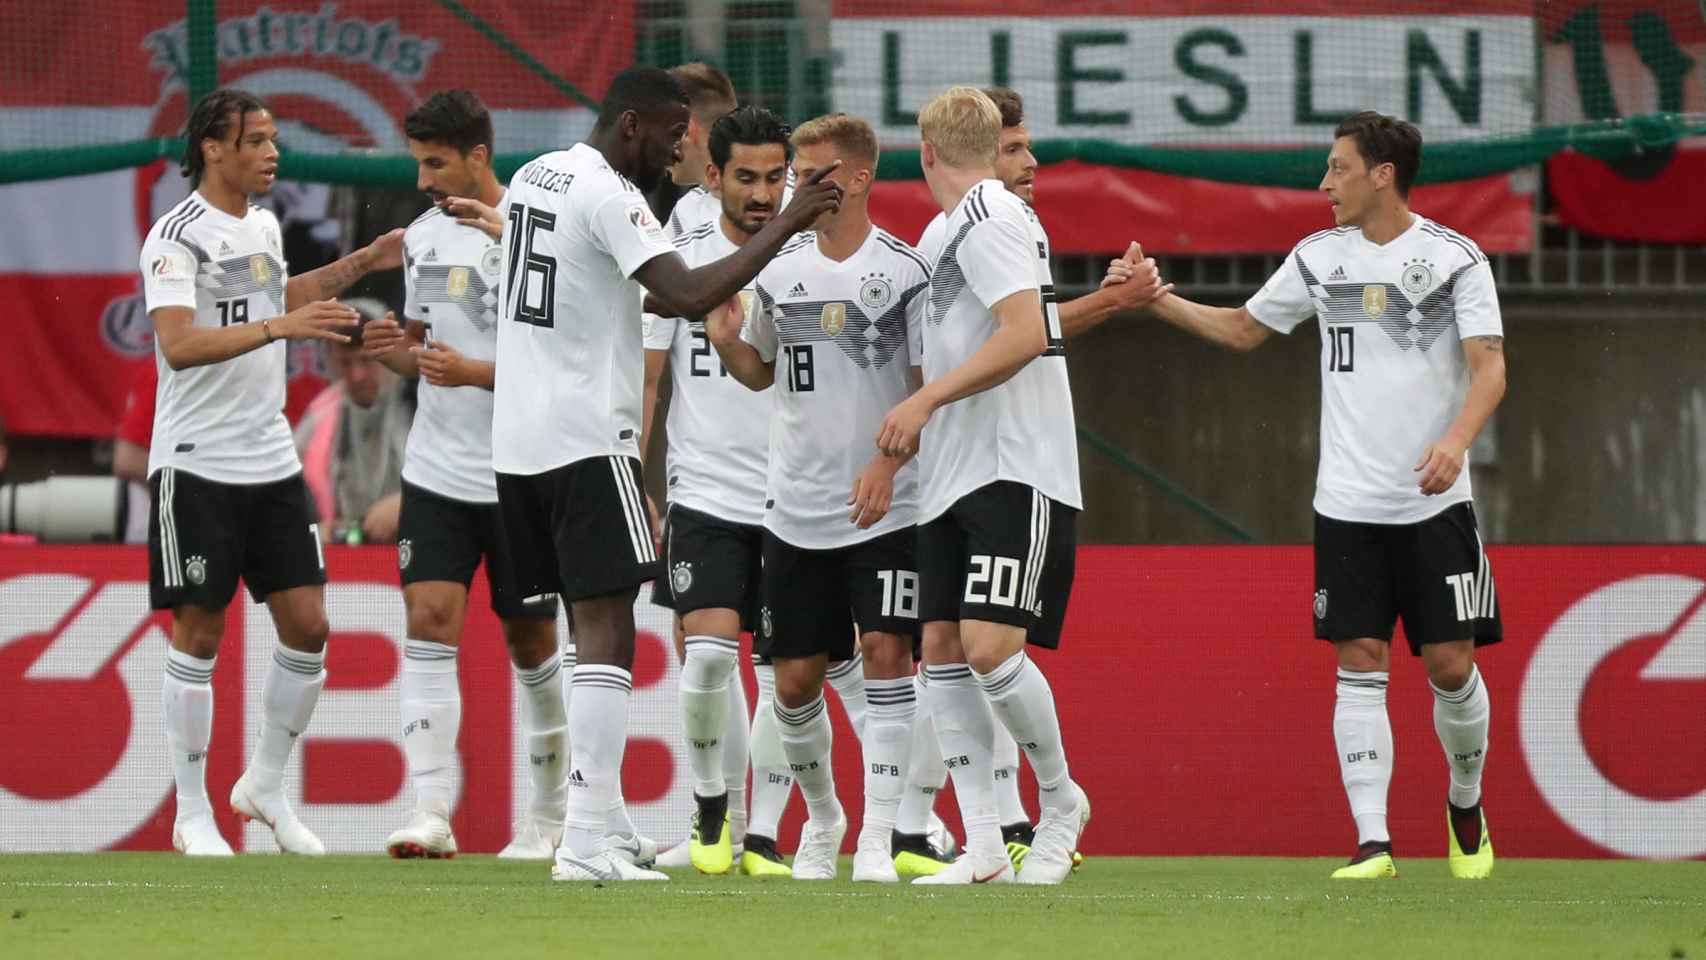 Alemania siempre será favorita para ganar el Mundial, asegura